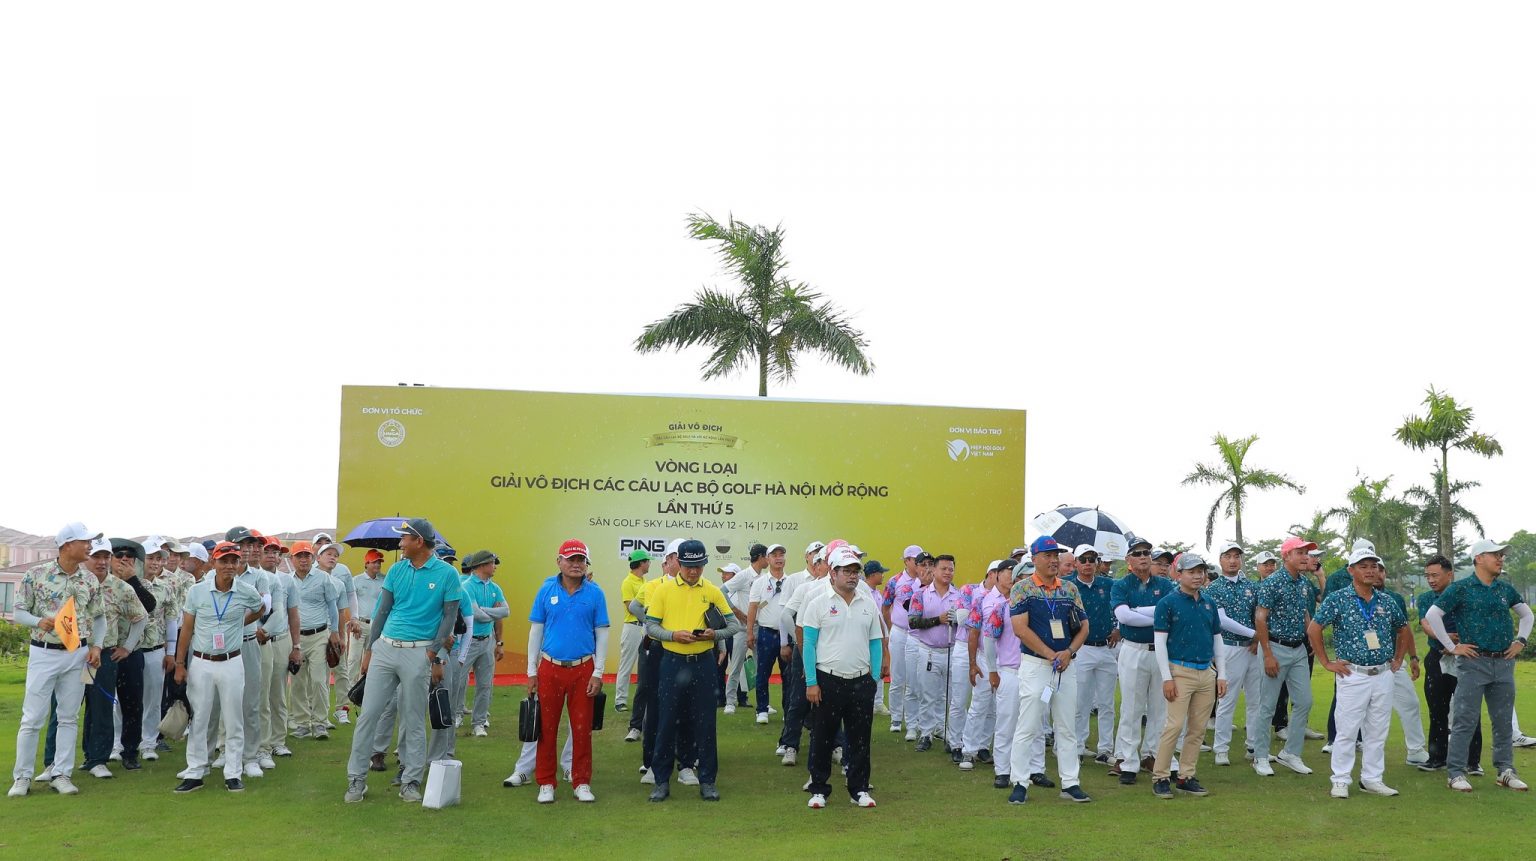 Vòng loại giải Vô địch Các CLB golf Hà Nội mở rộng - Hanoi Open 2022 chính thức khởi tranh